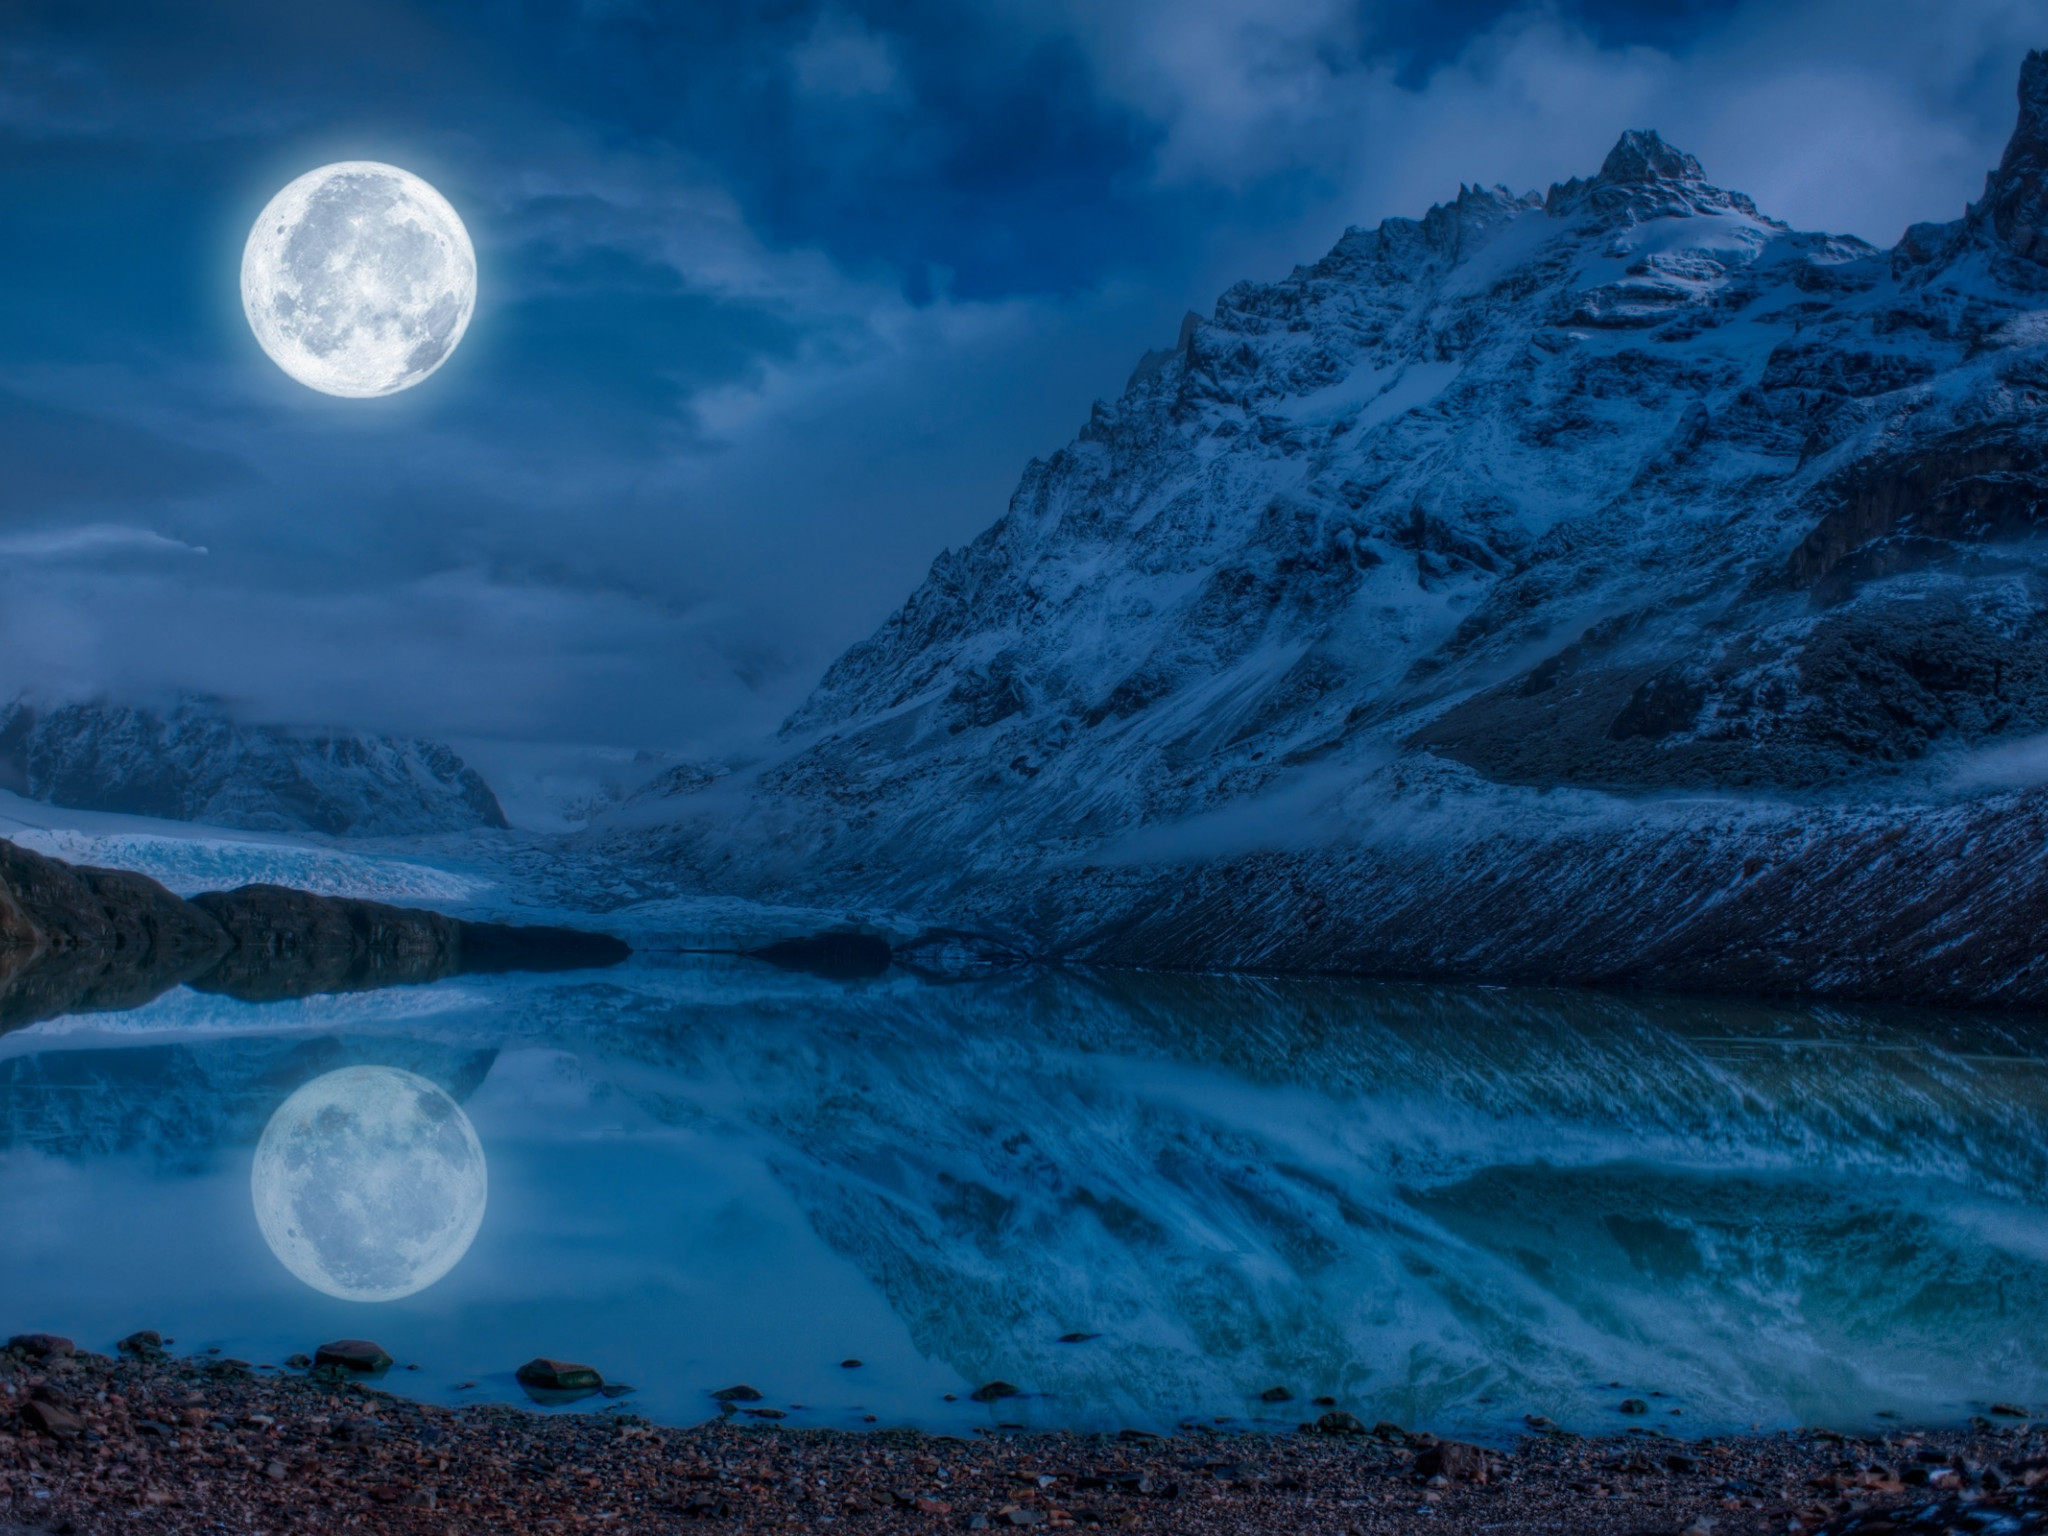 Woda, księżyc i góry odbite w jeziorze